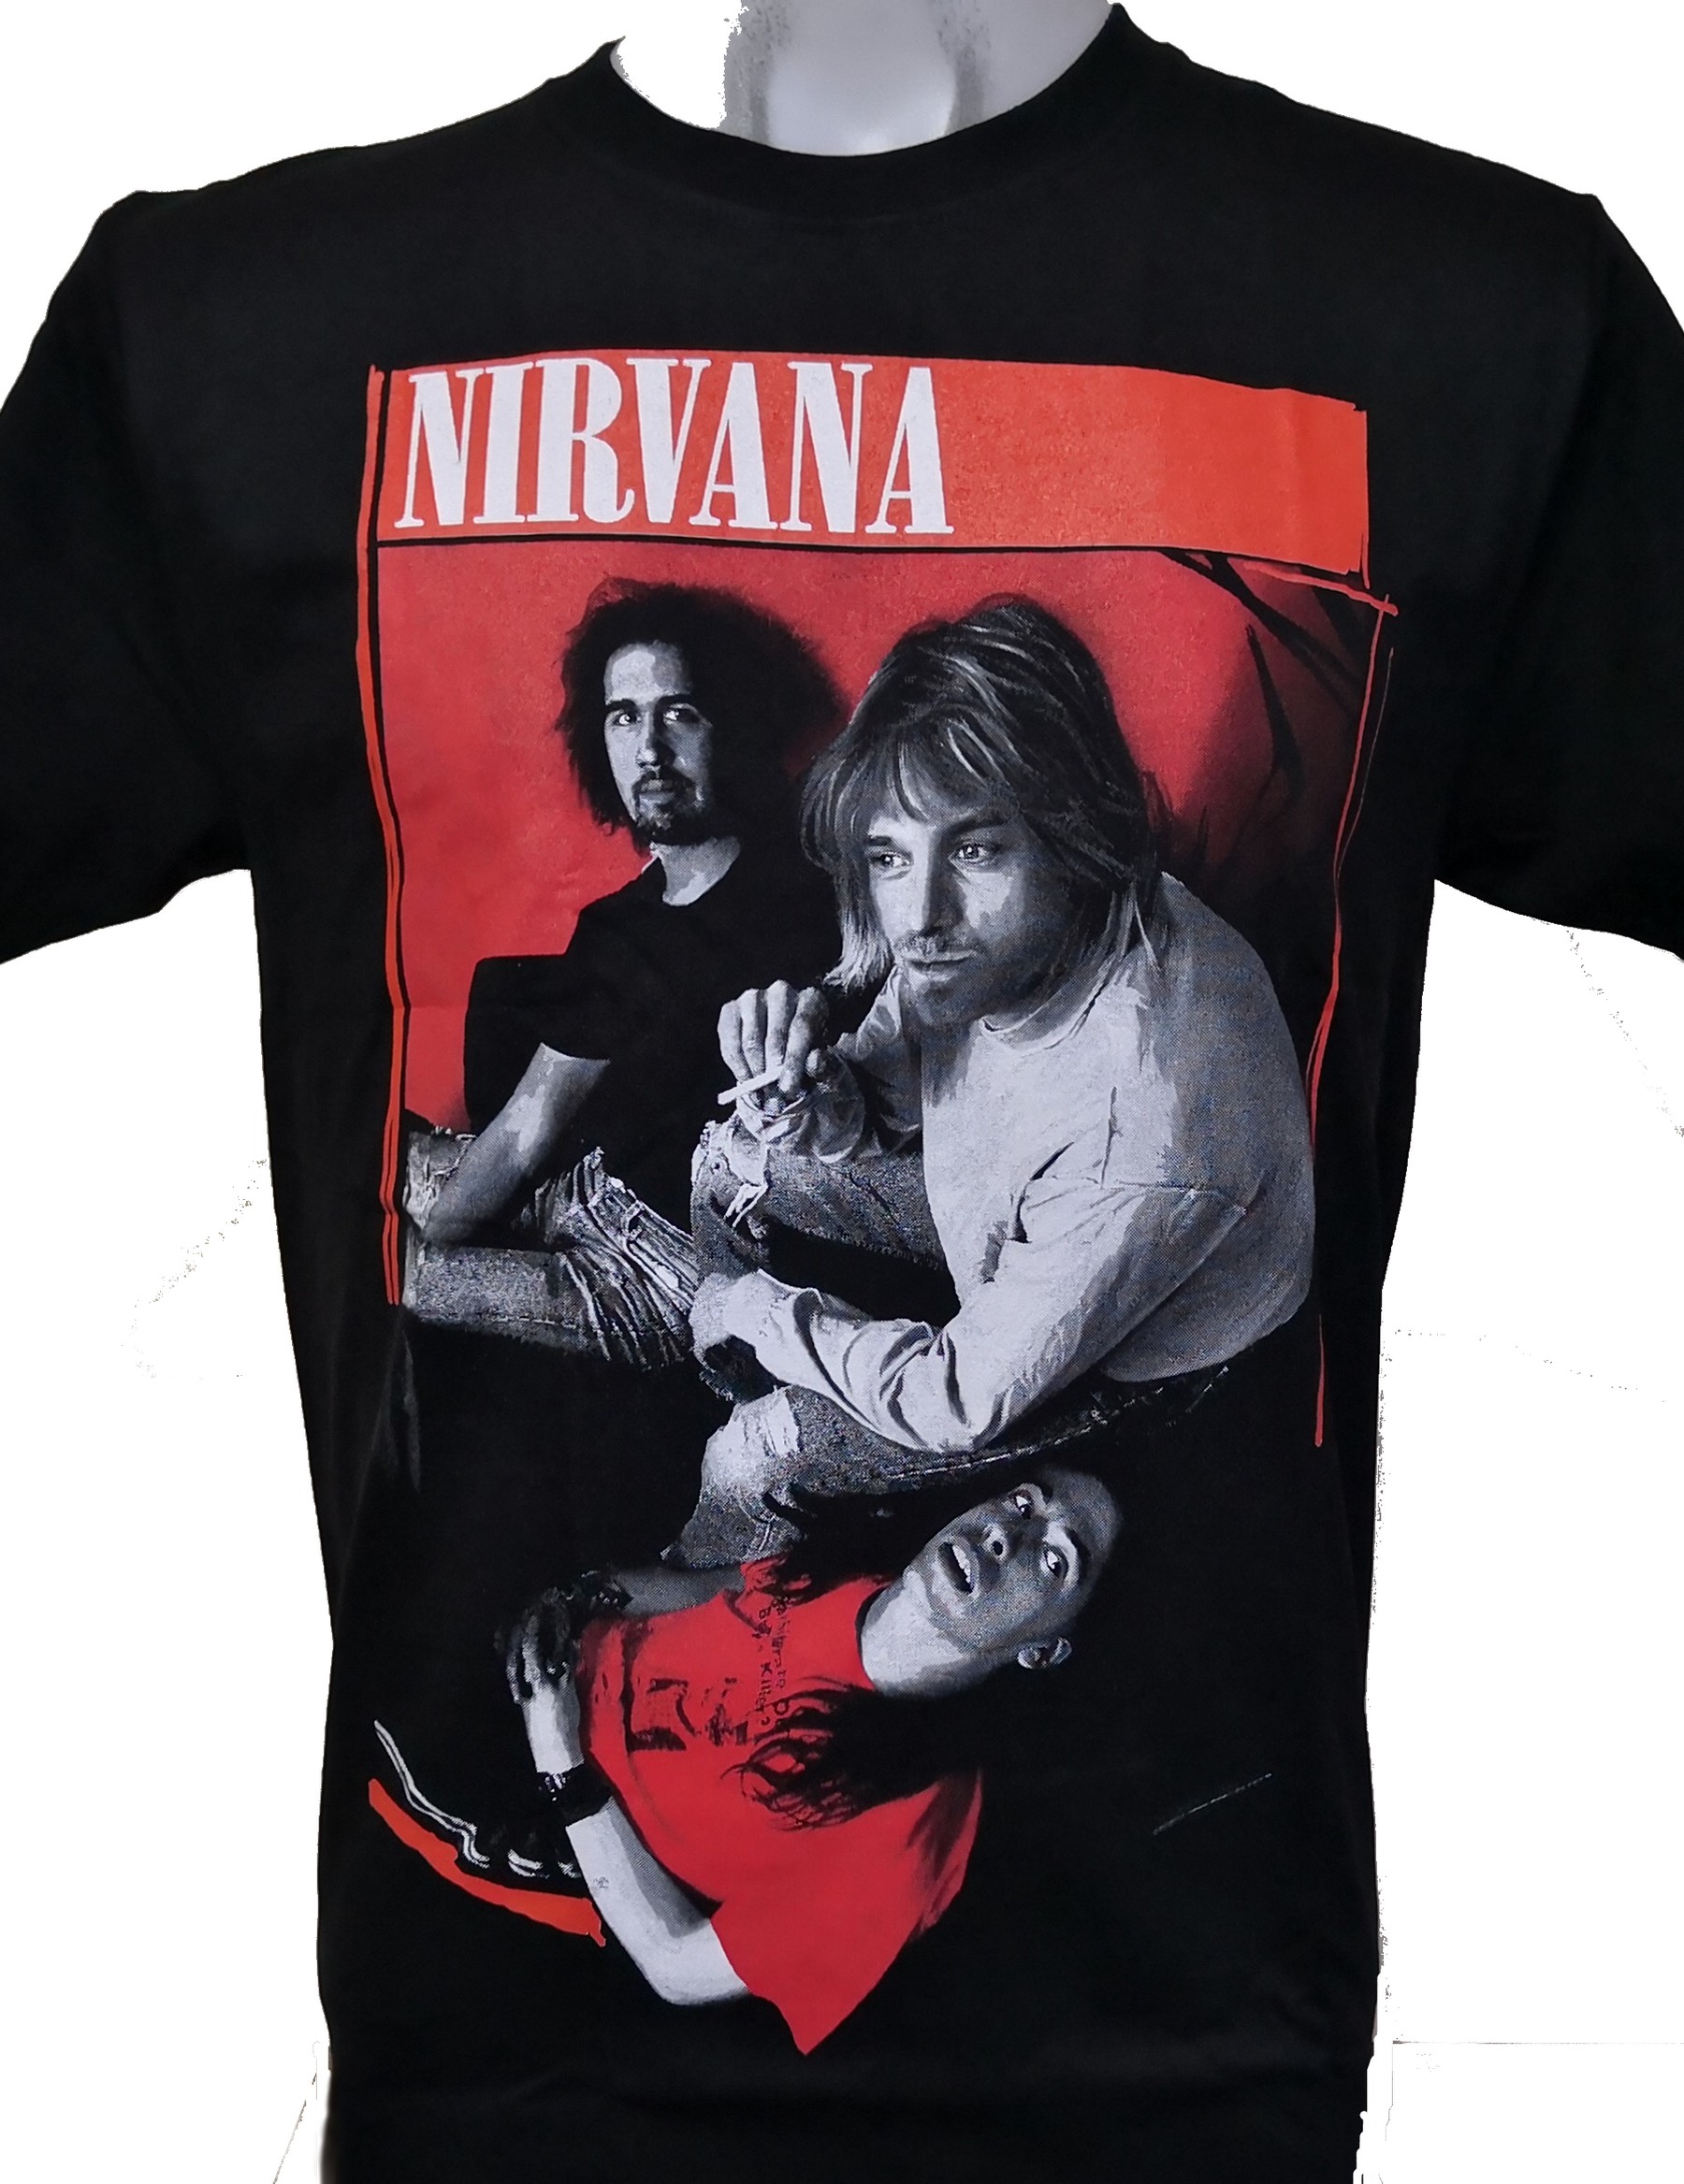 Nirvana t-shirt size XL